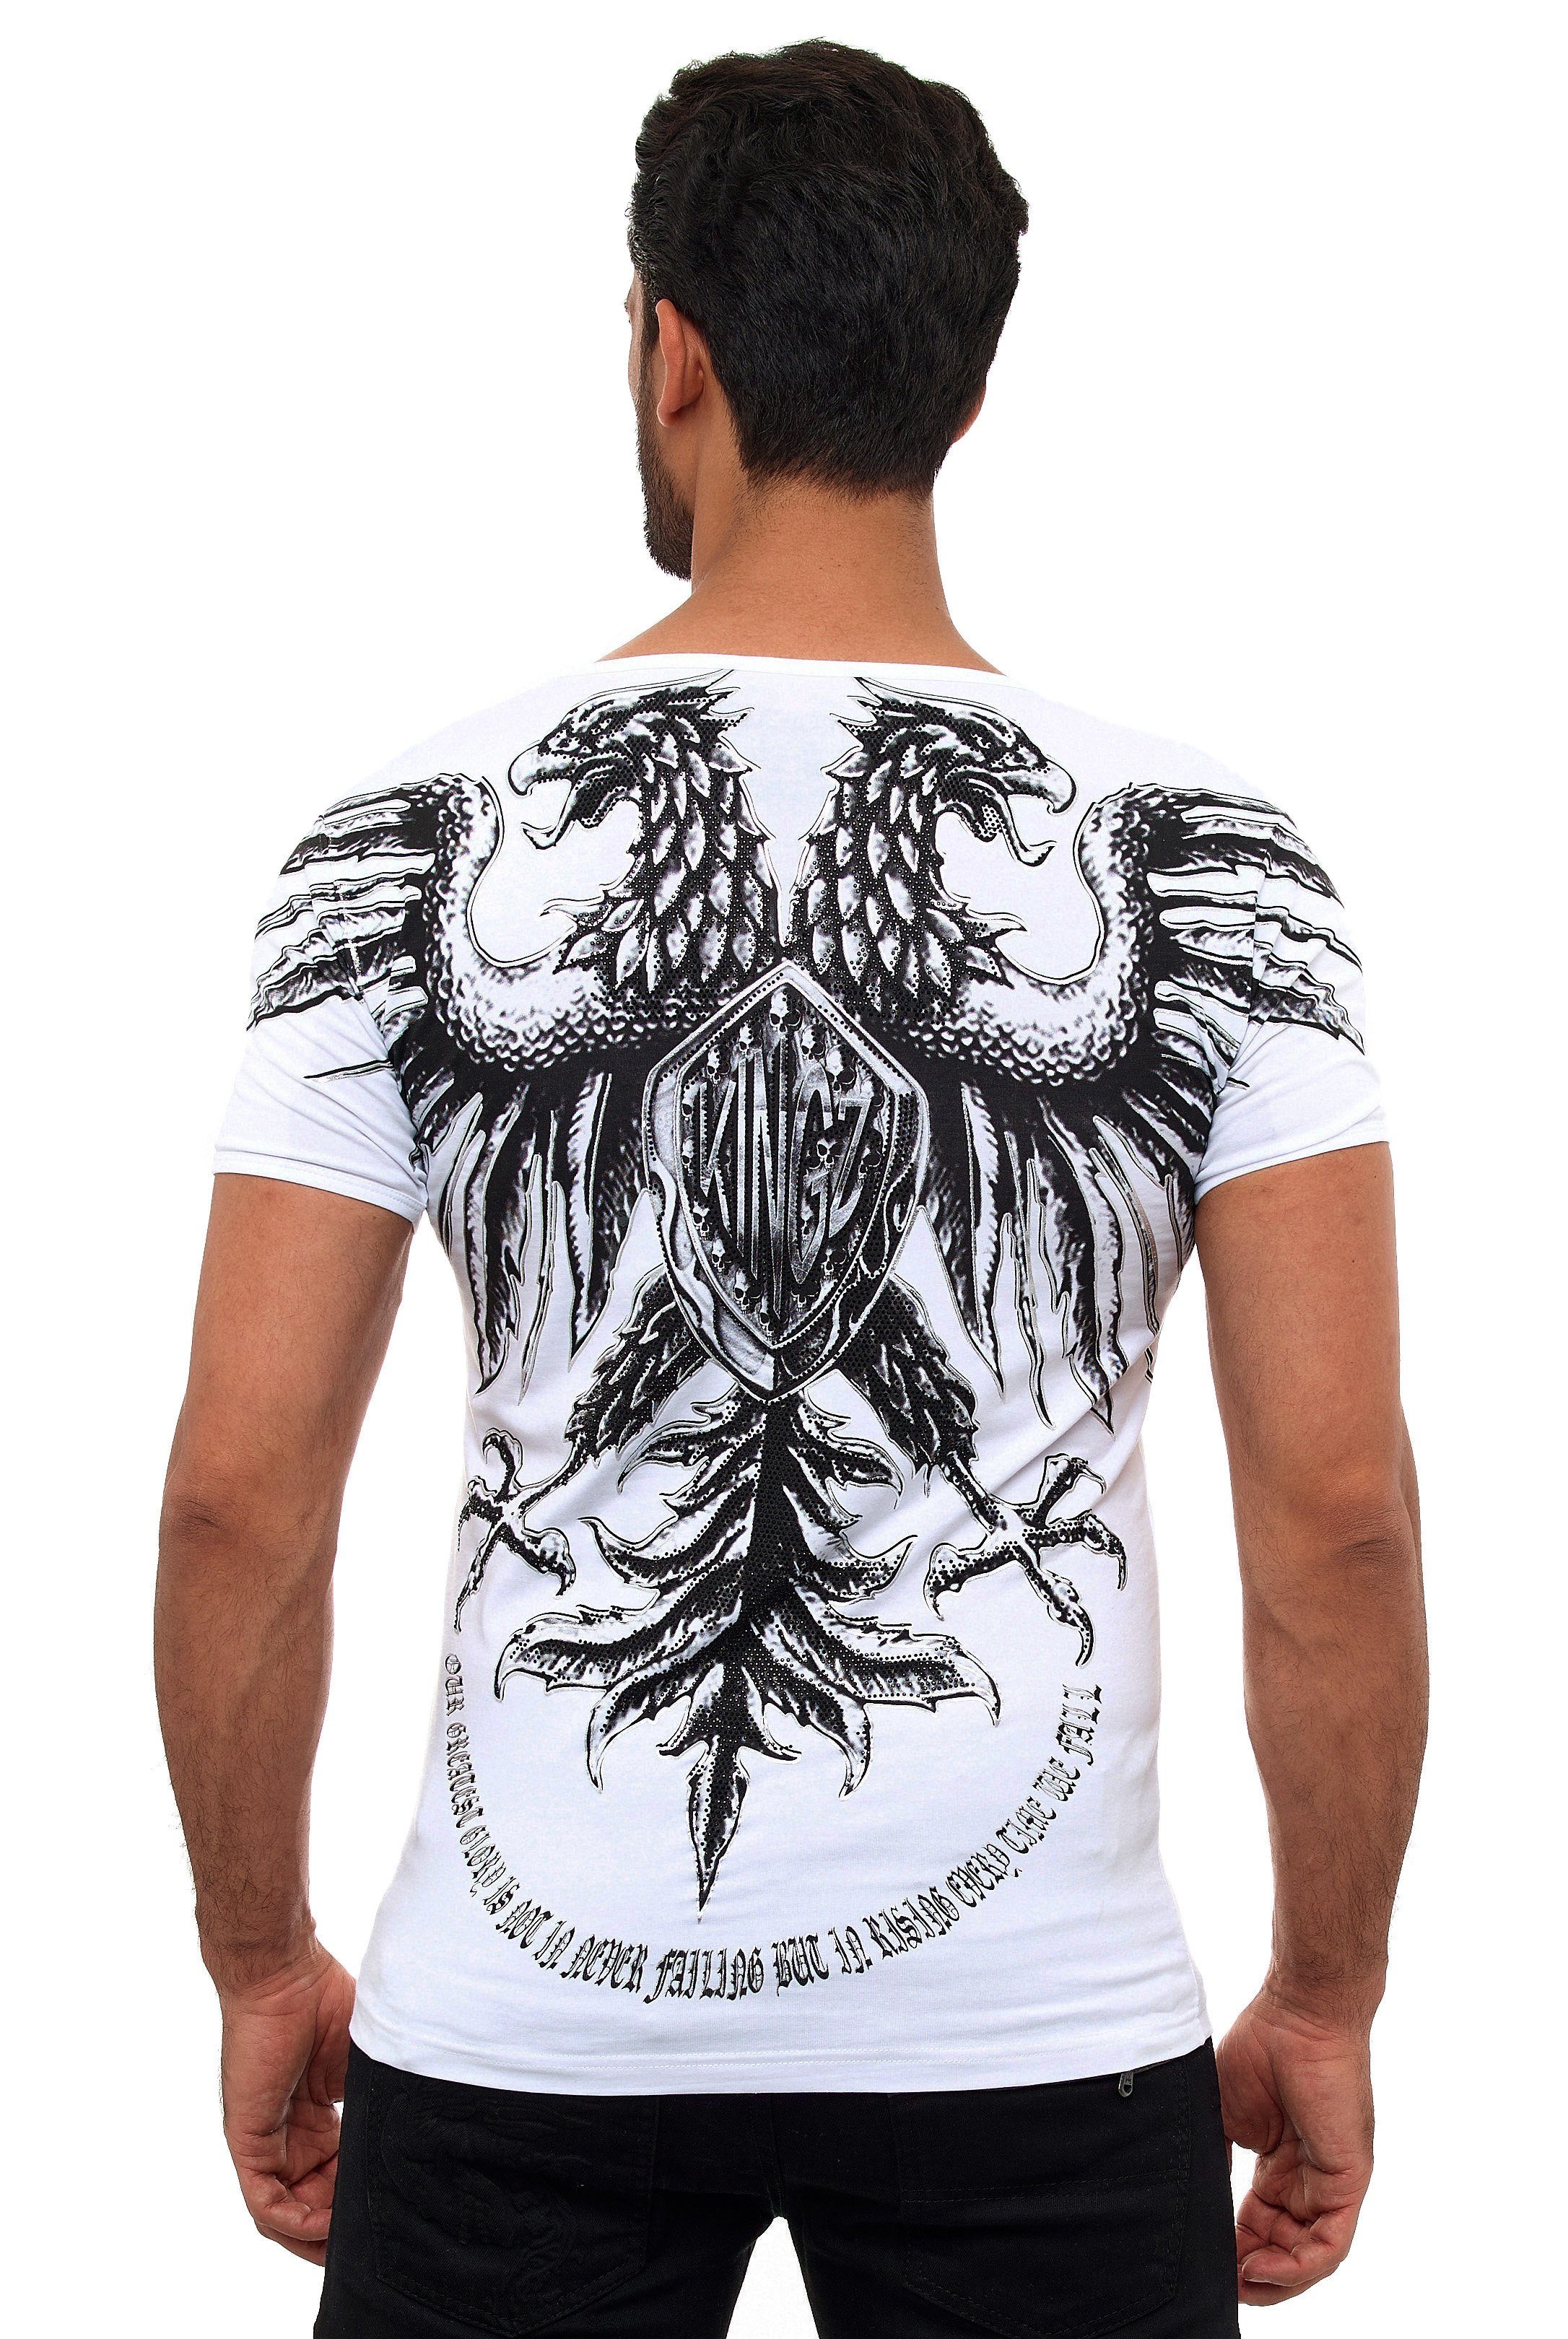 Adler-Print weiß-silberfarben T-Shirt KINGZ mit ausgefallenem